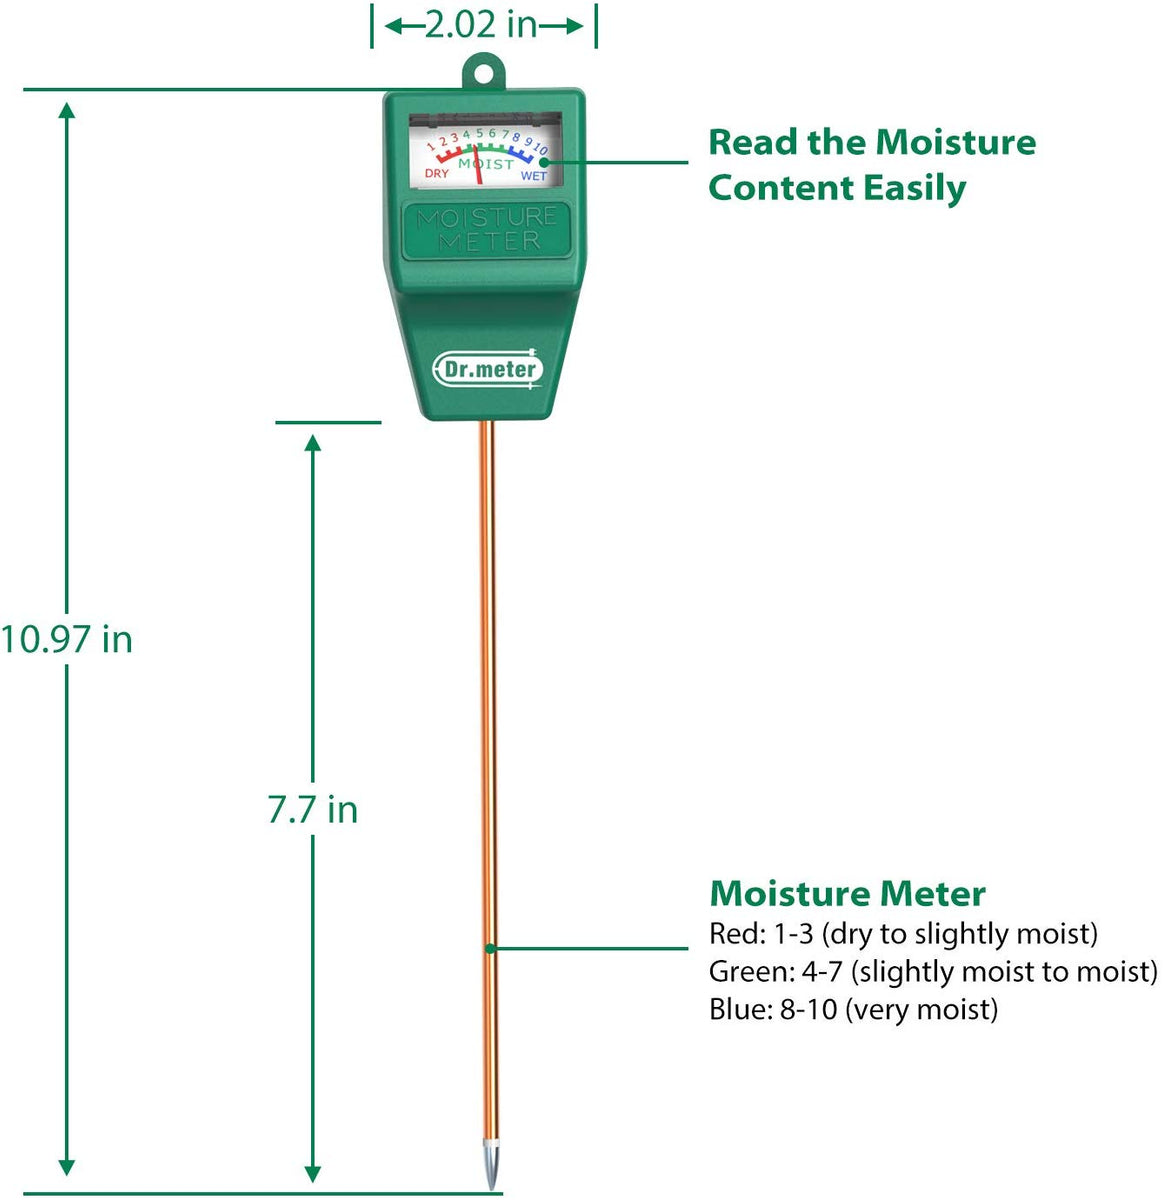 How Do Moisture Meters Work?